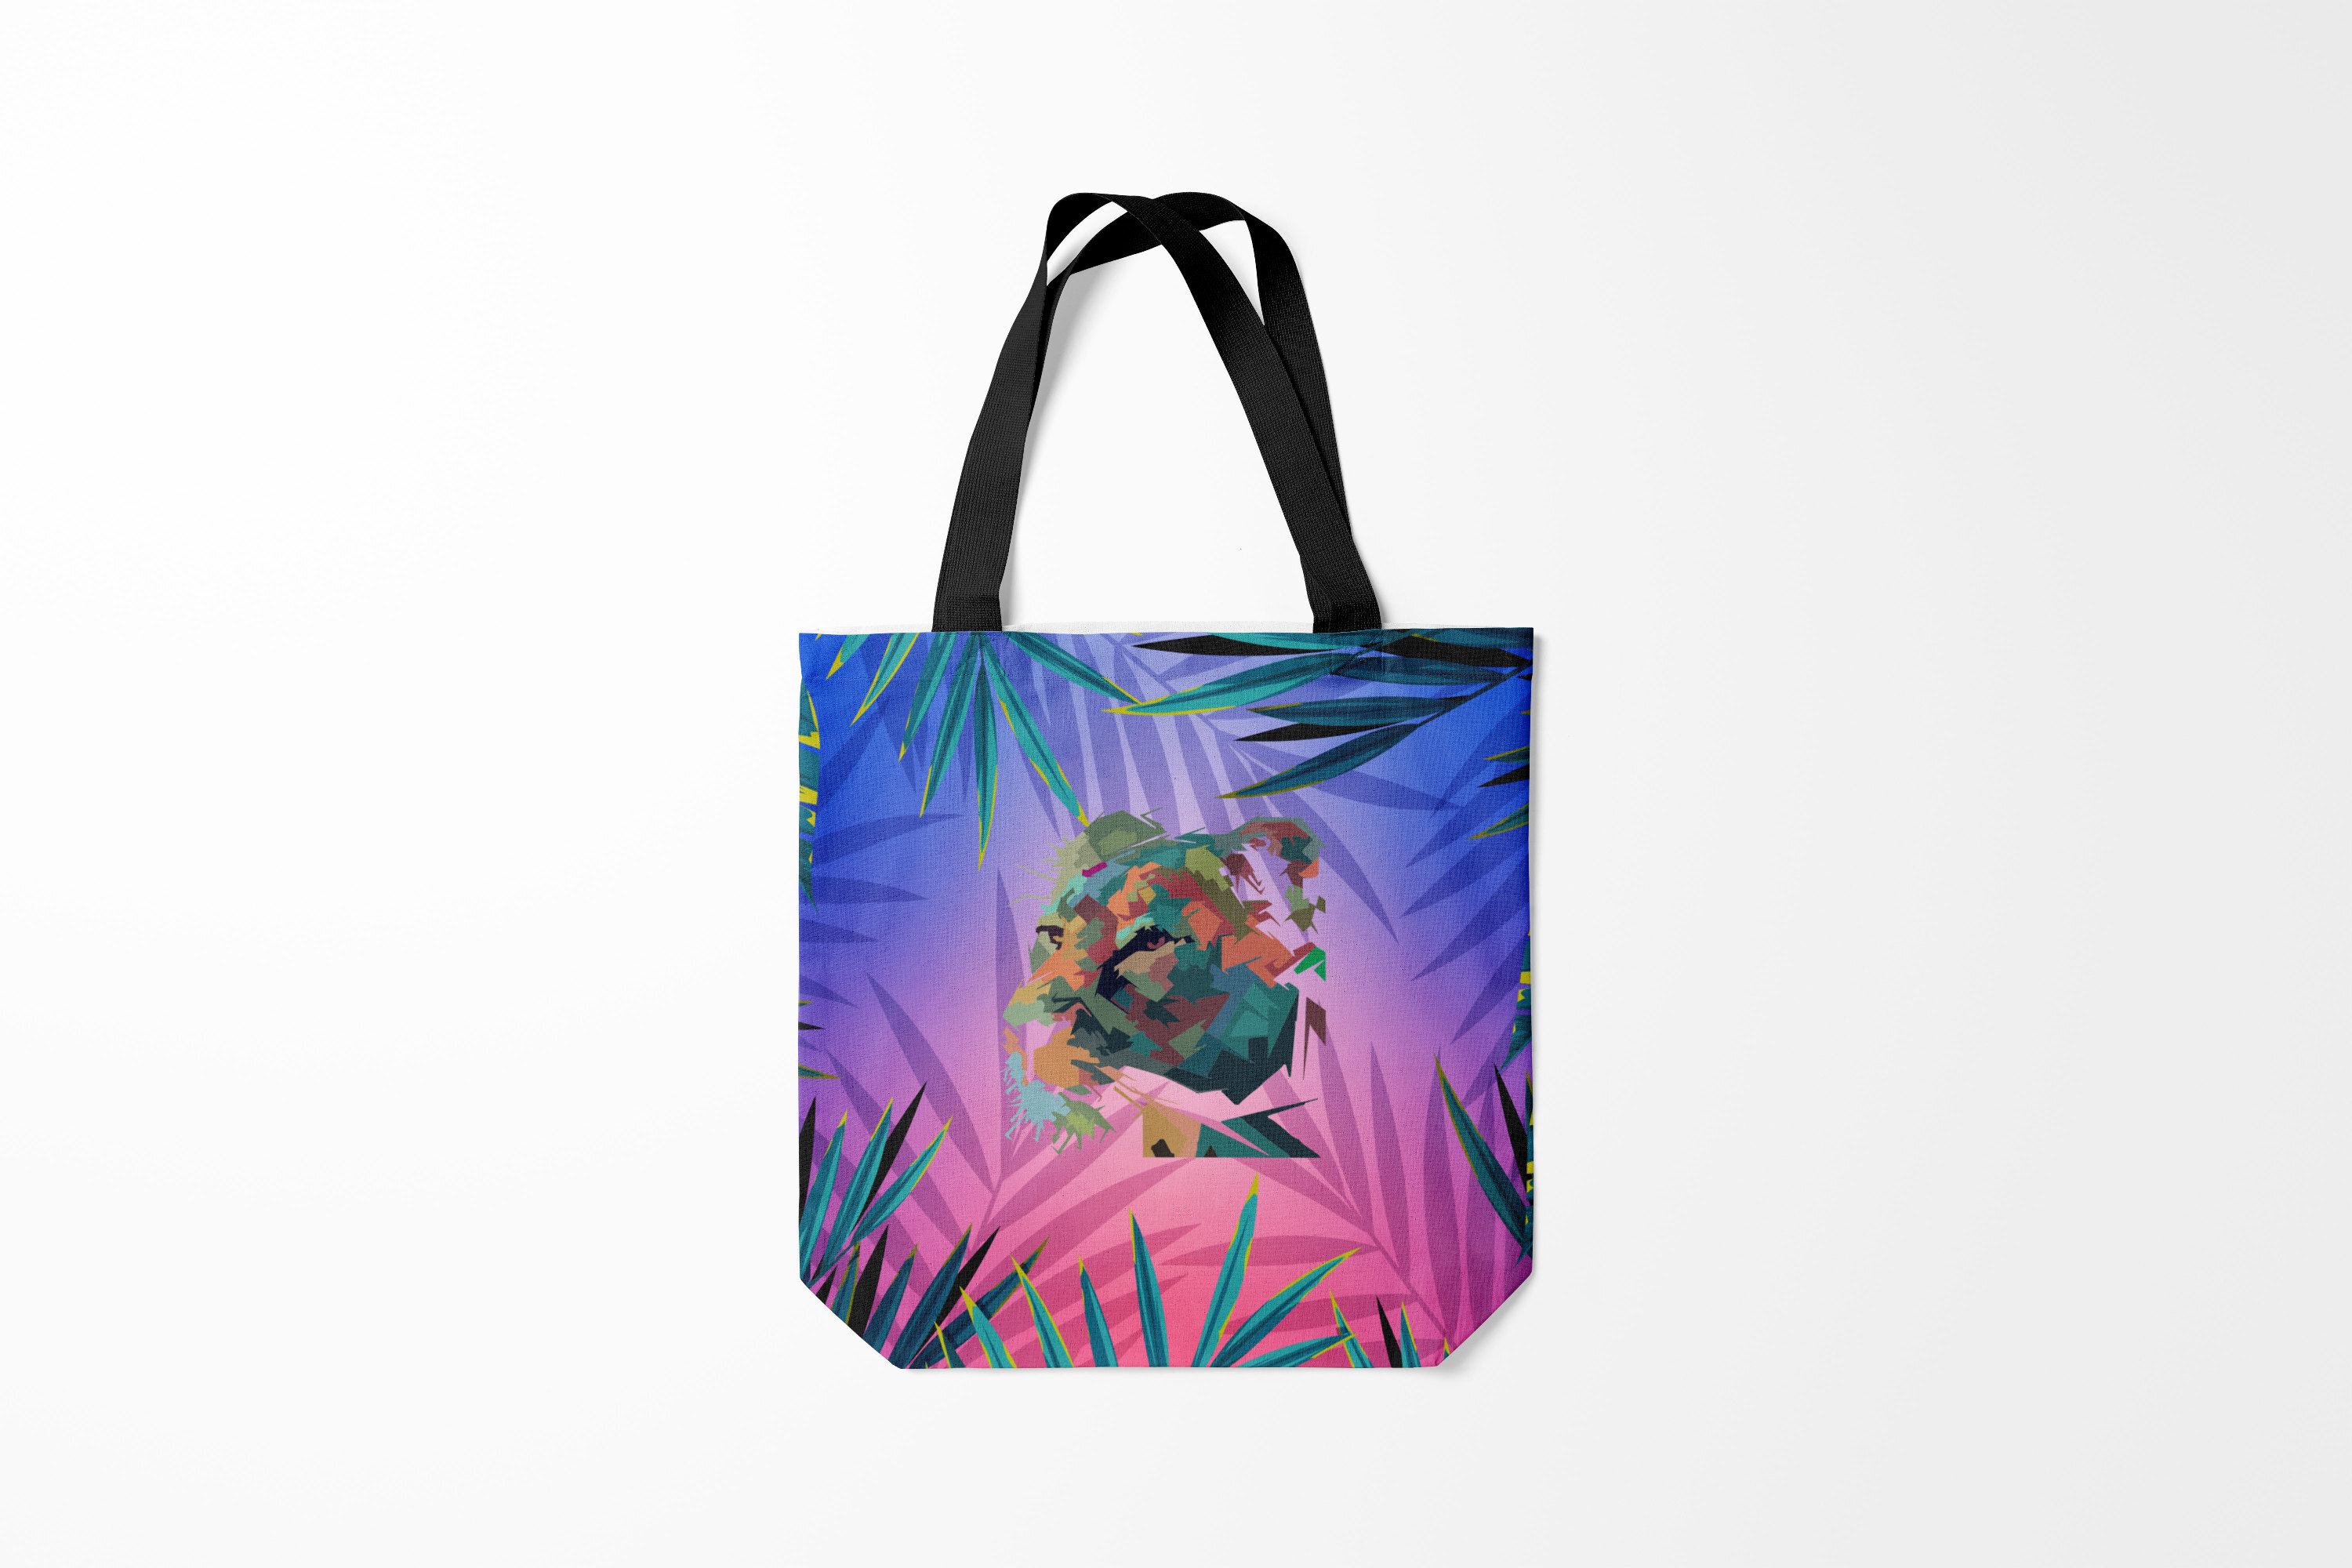 Унисекс сумка Burnettie с изображением крупных тигров в разноцветных абстракциях.